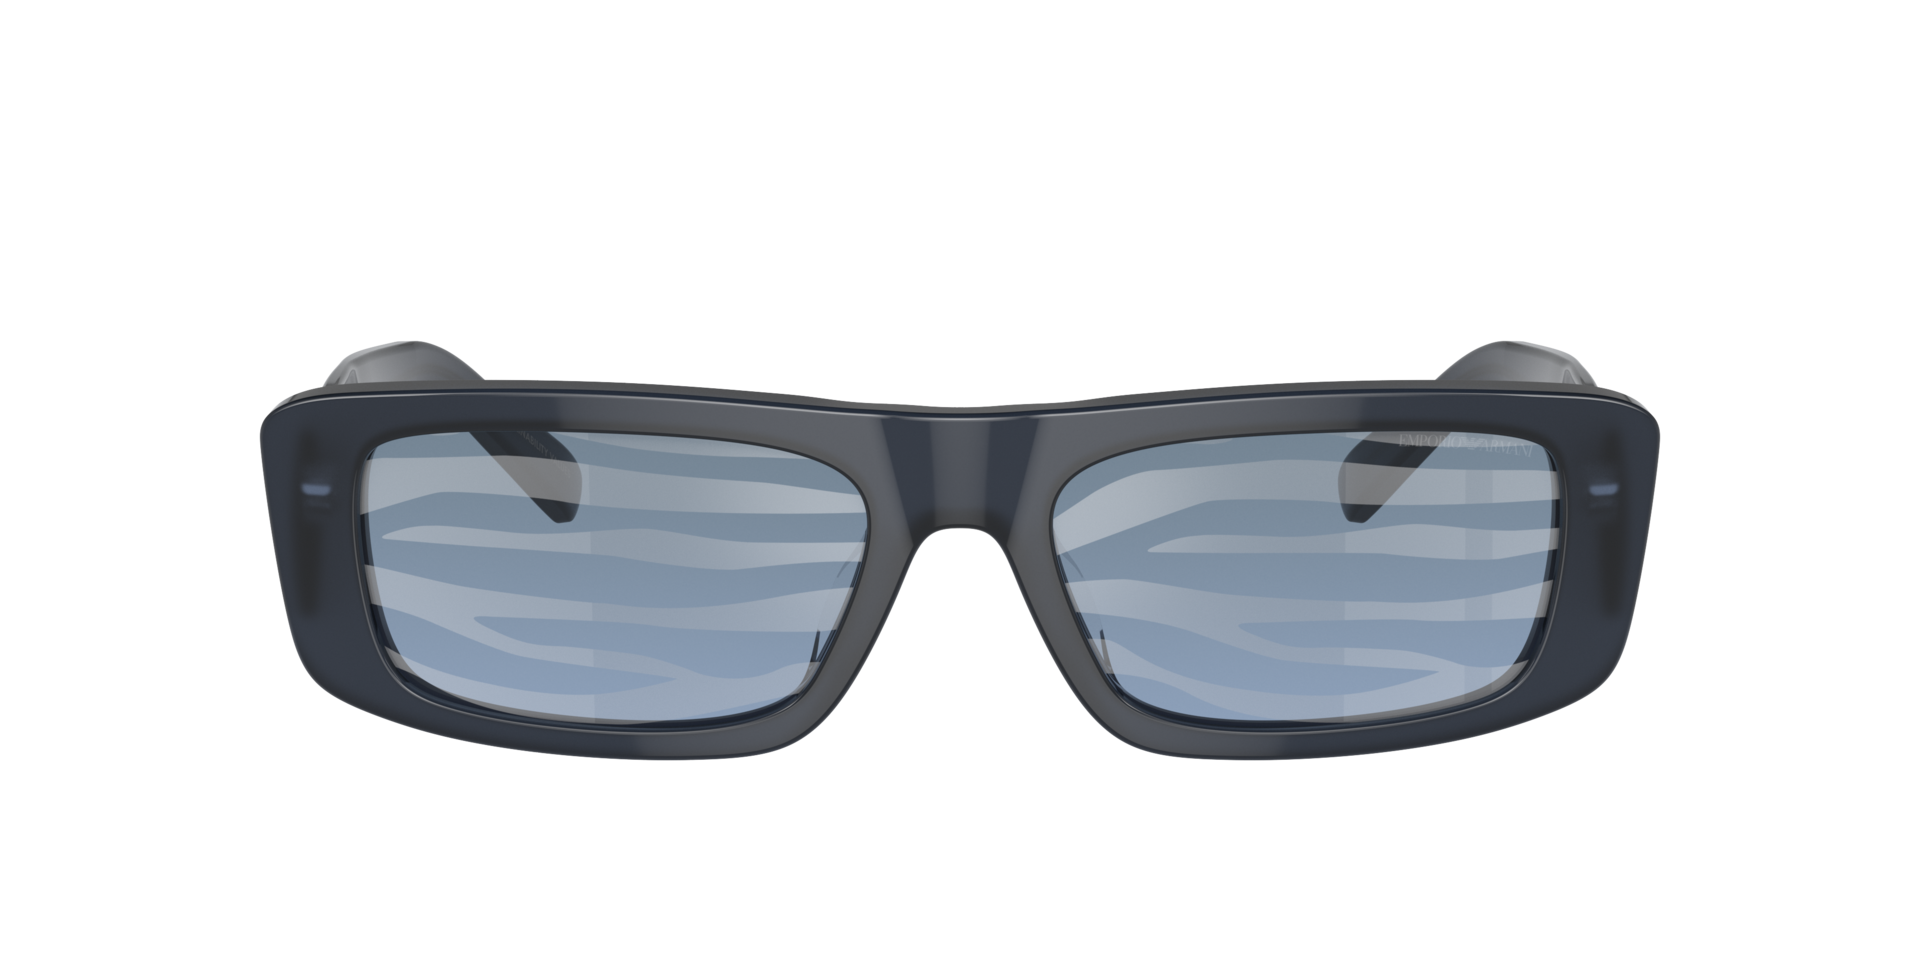 Das Bild zeigt die Sonnenbrille EA4229U 6120AM von der Marke Emporio Armani in blau/zebra.